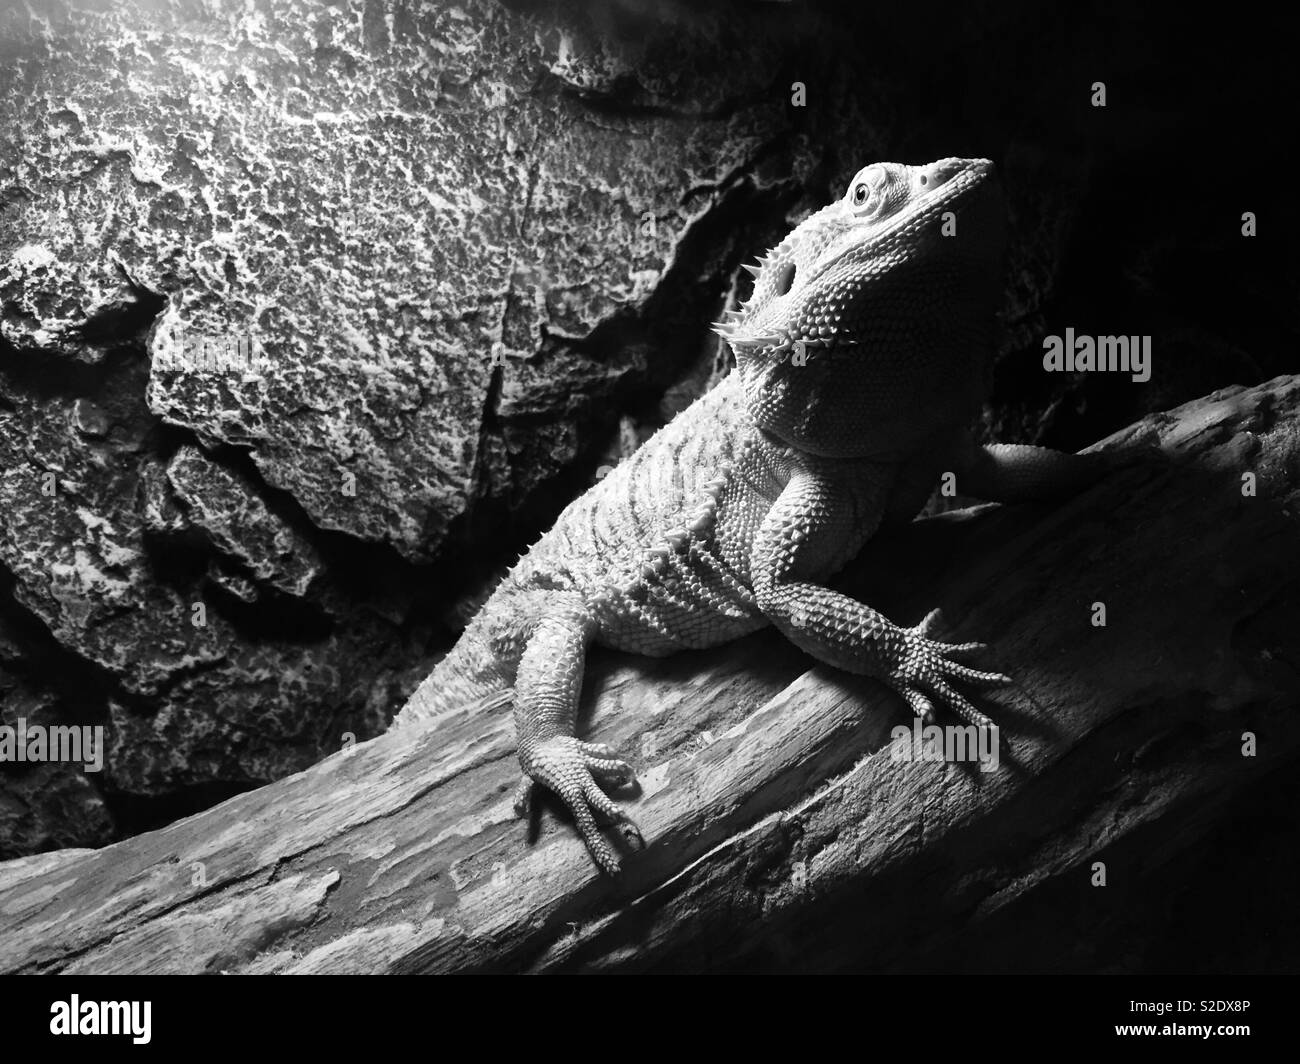 Schwarz-weiß Foto von Agama lizard Stockfoto